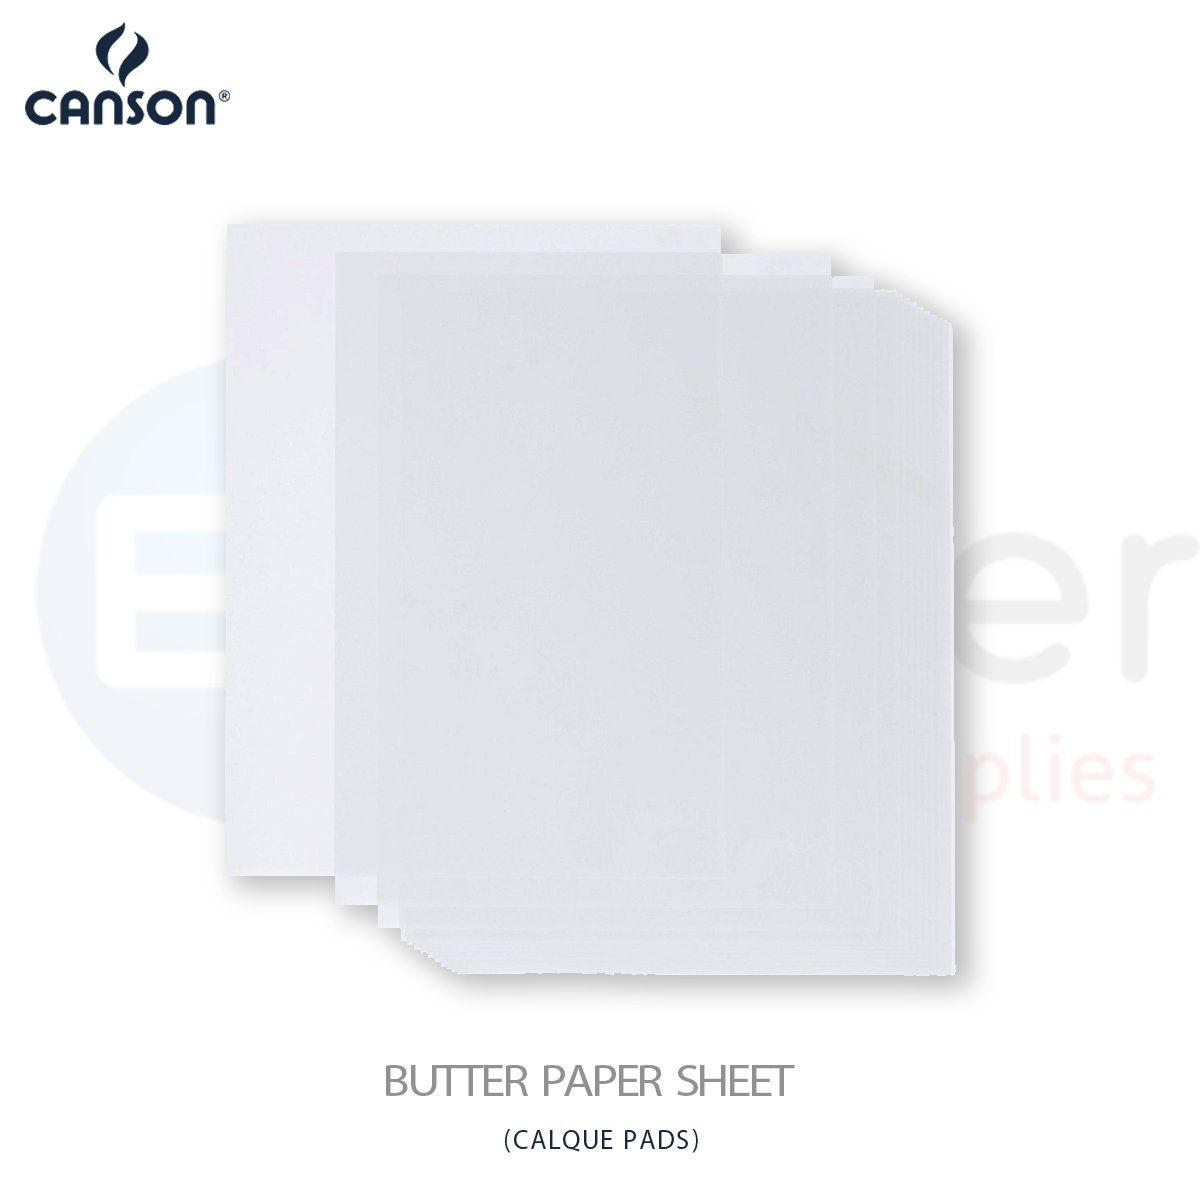 Canson calque paper,50/55gr,70x100cm,250sh/pack.